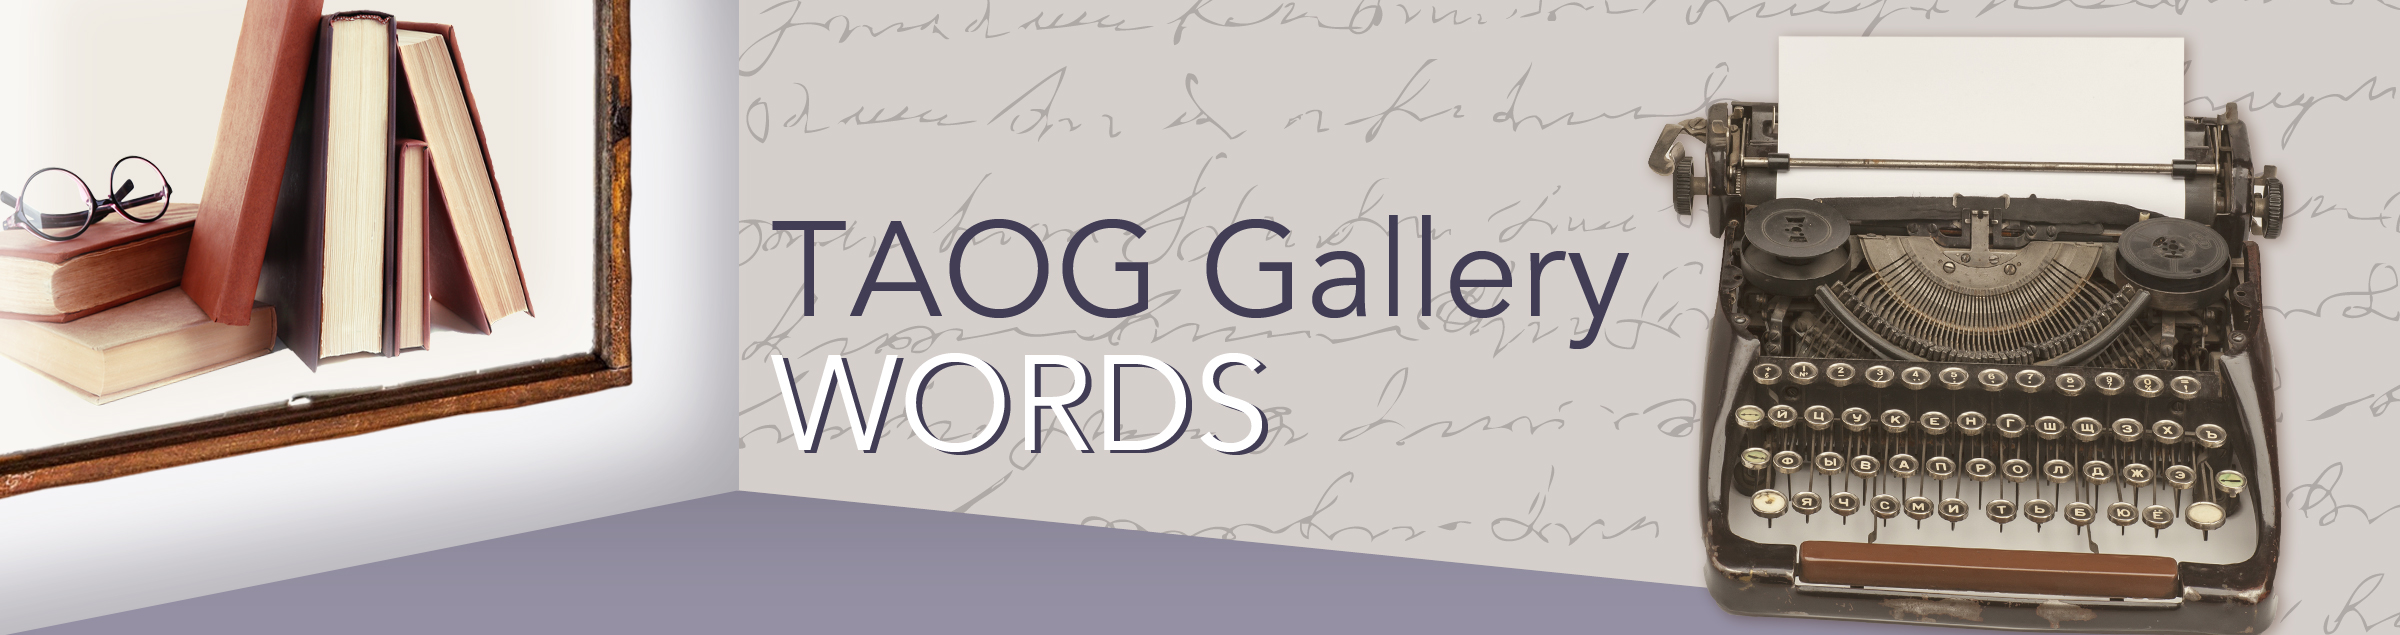 TAOG Gallery Words